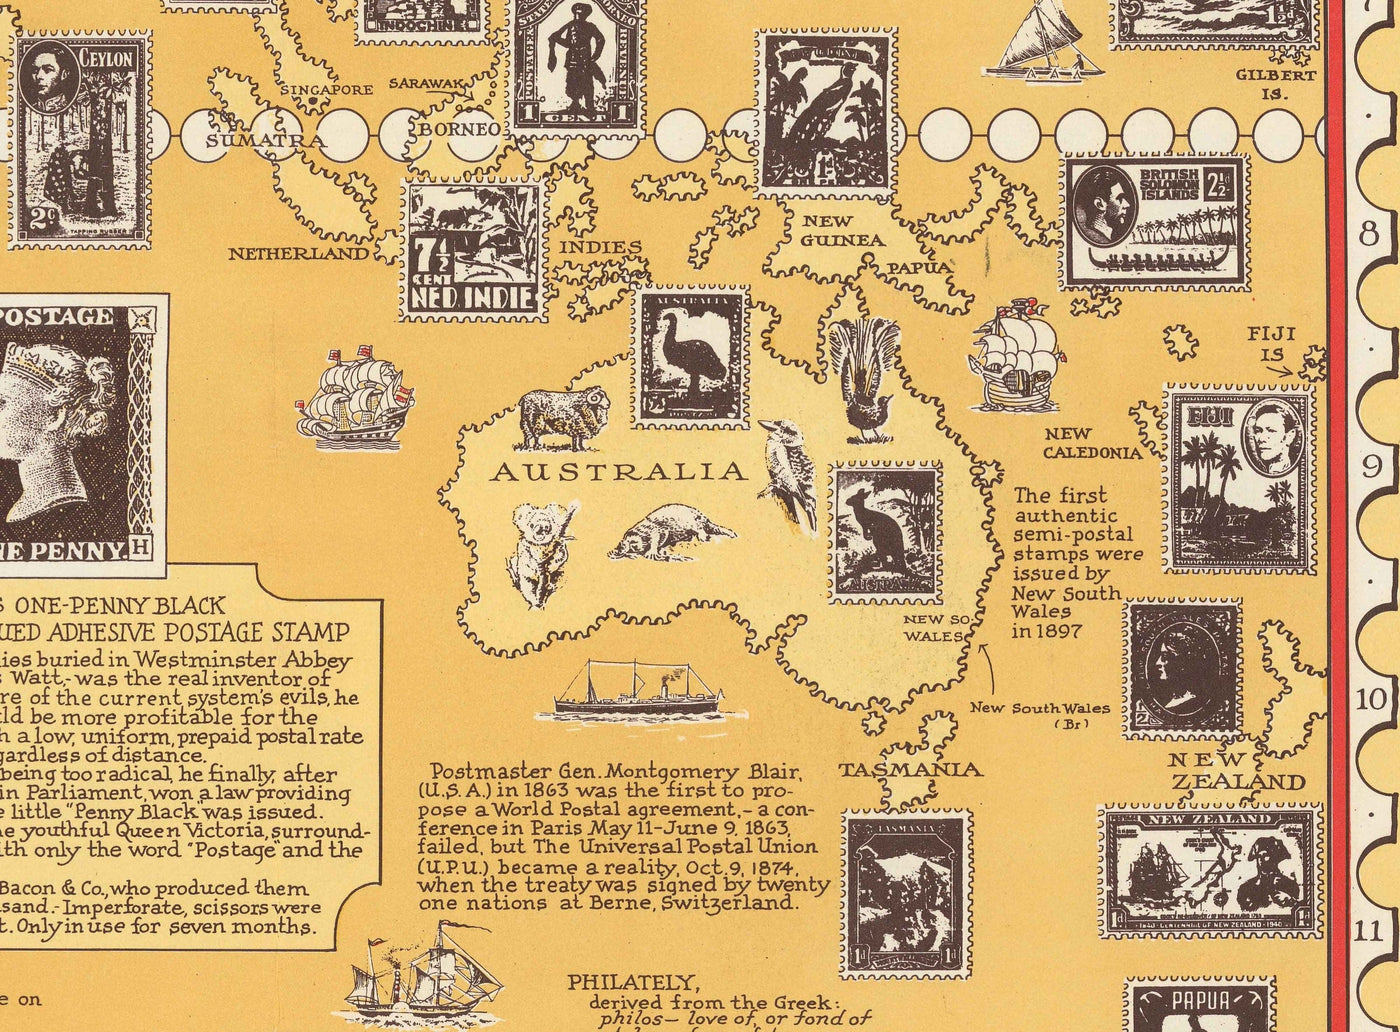 Antiguo mapa del mundo de los sellos, 1947 por E. Chase - Atlas histórico de correos, lugares de interés, Penny Black